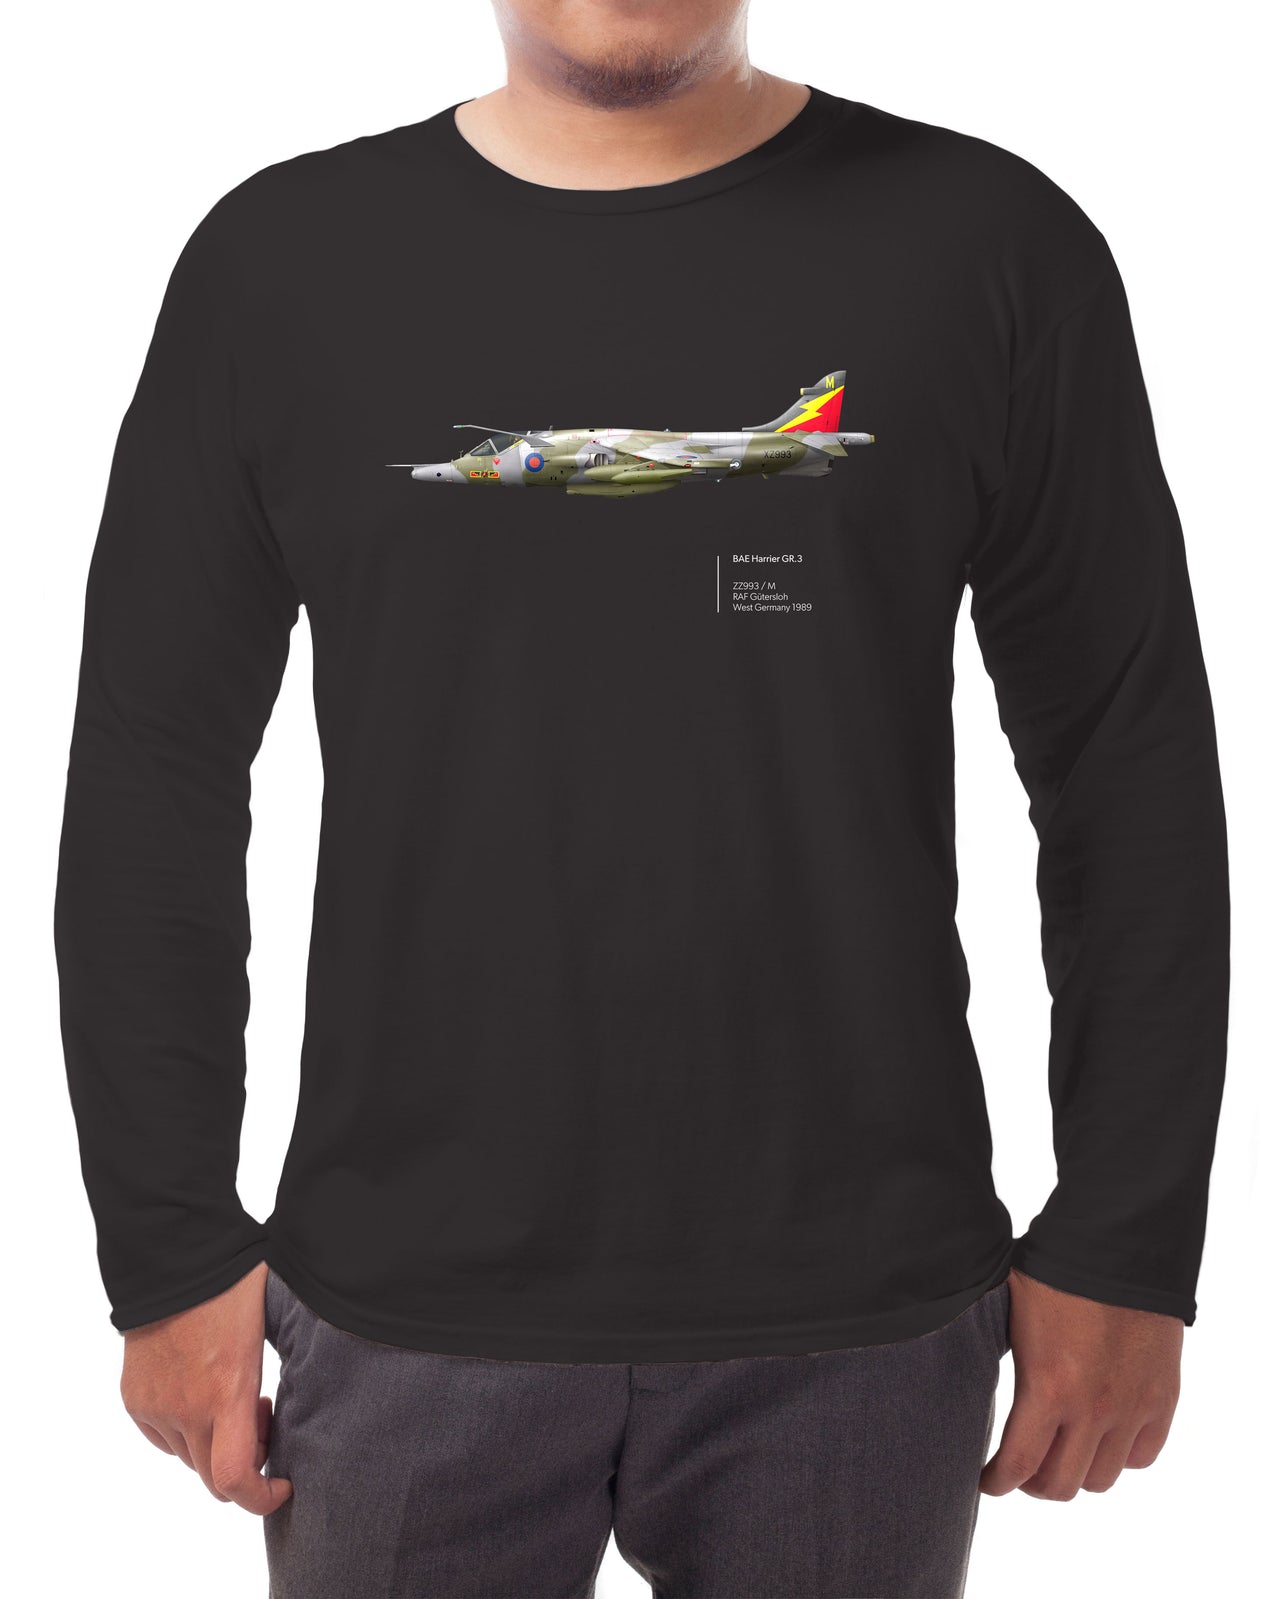 Harrier GR3 - Long-sleeve T-shirt